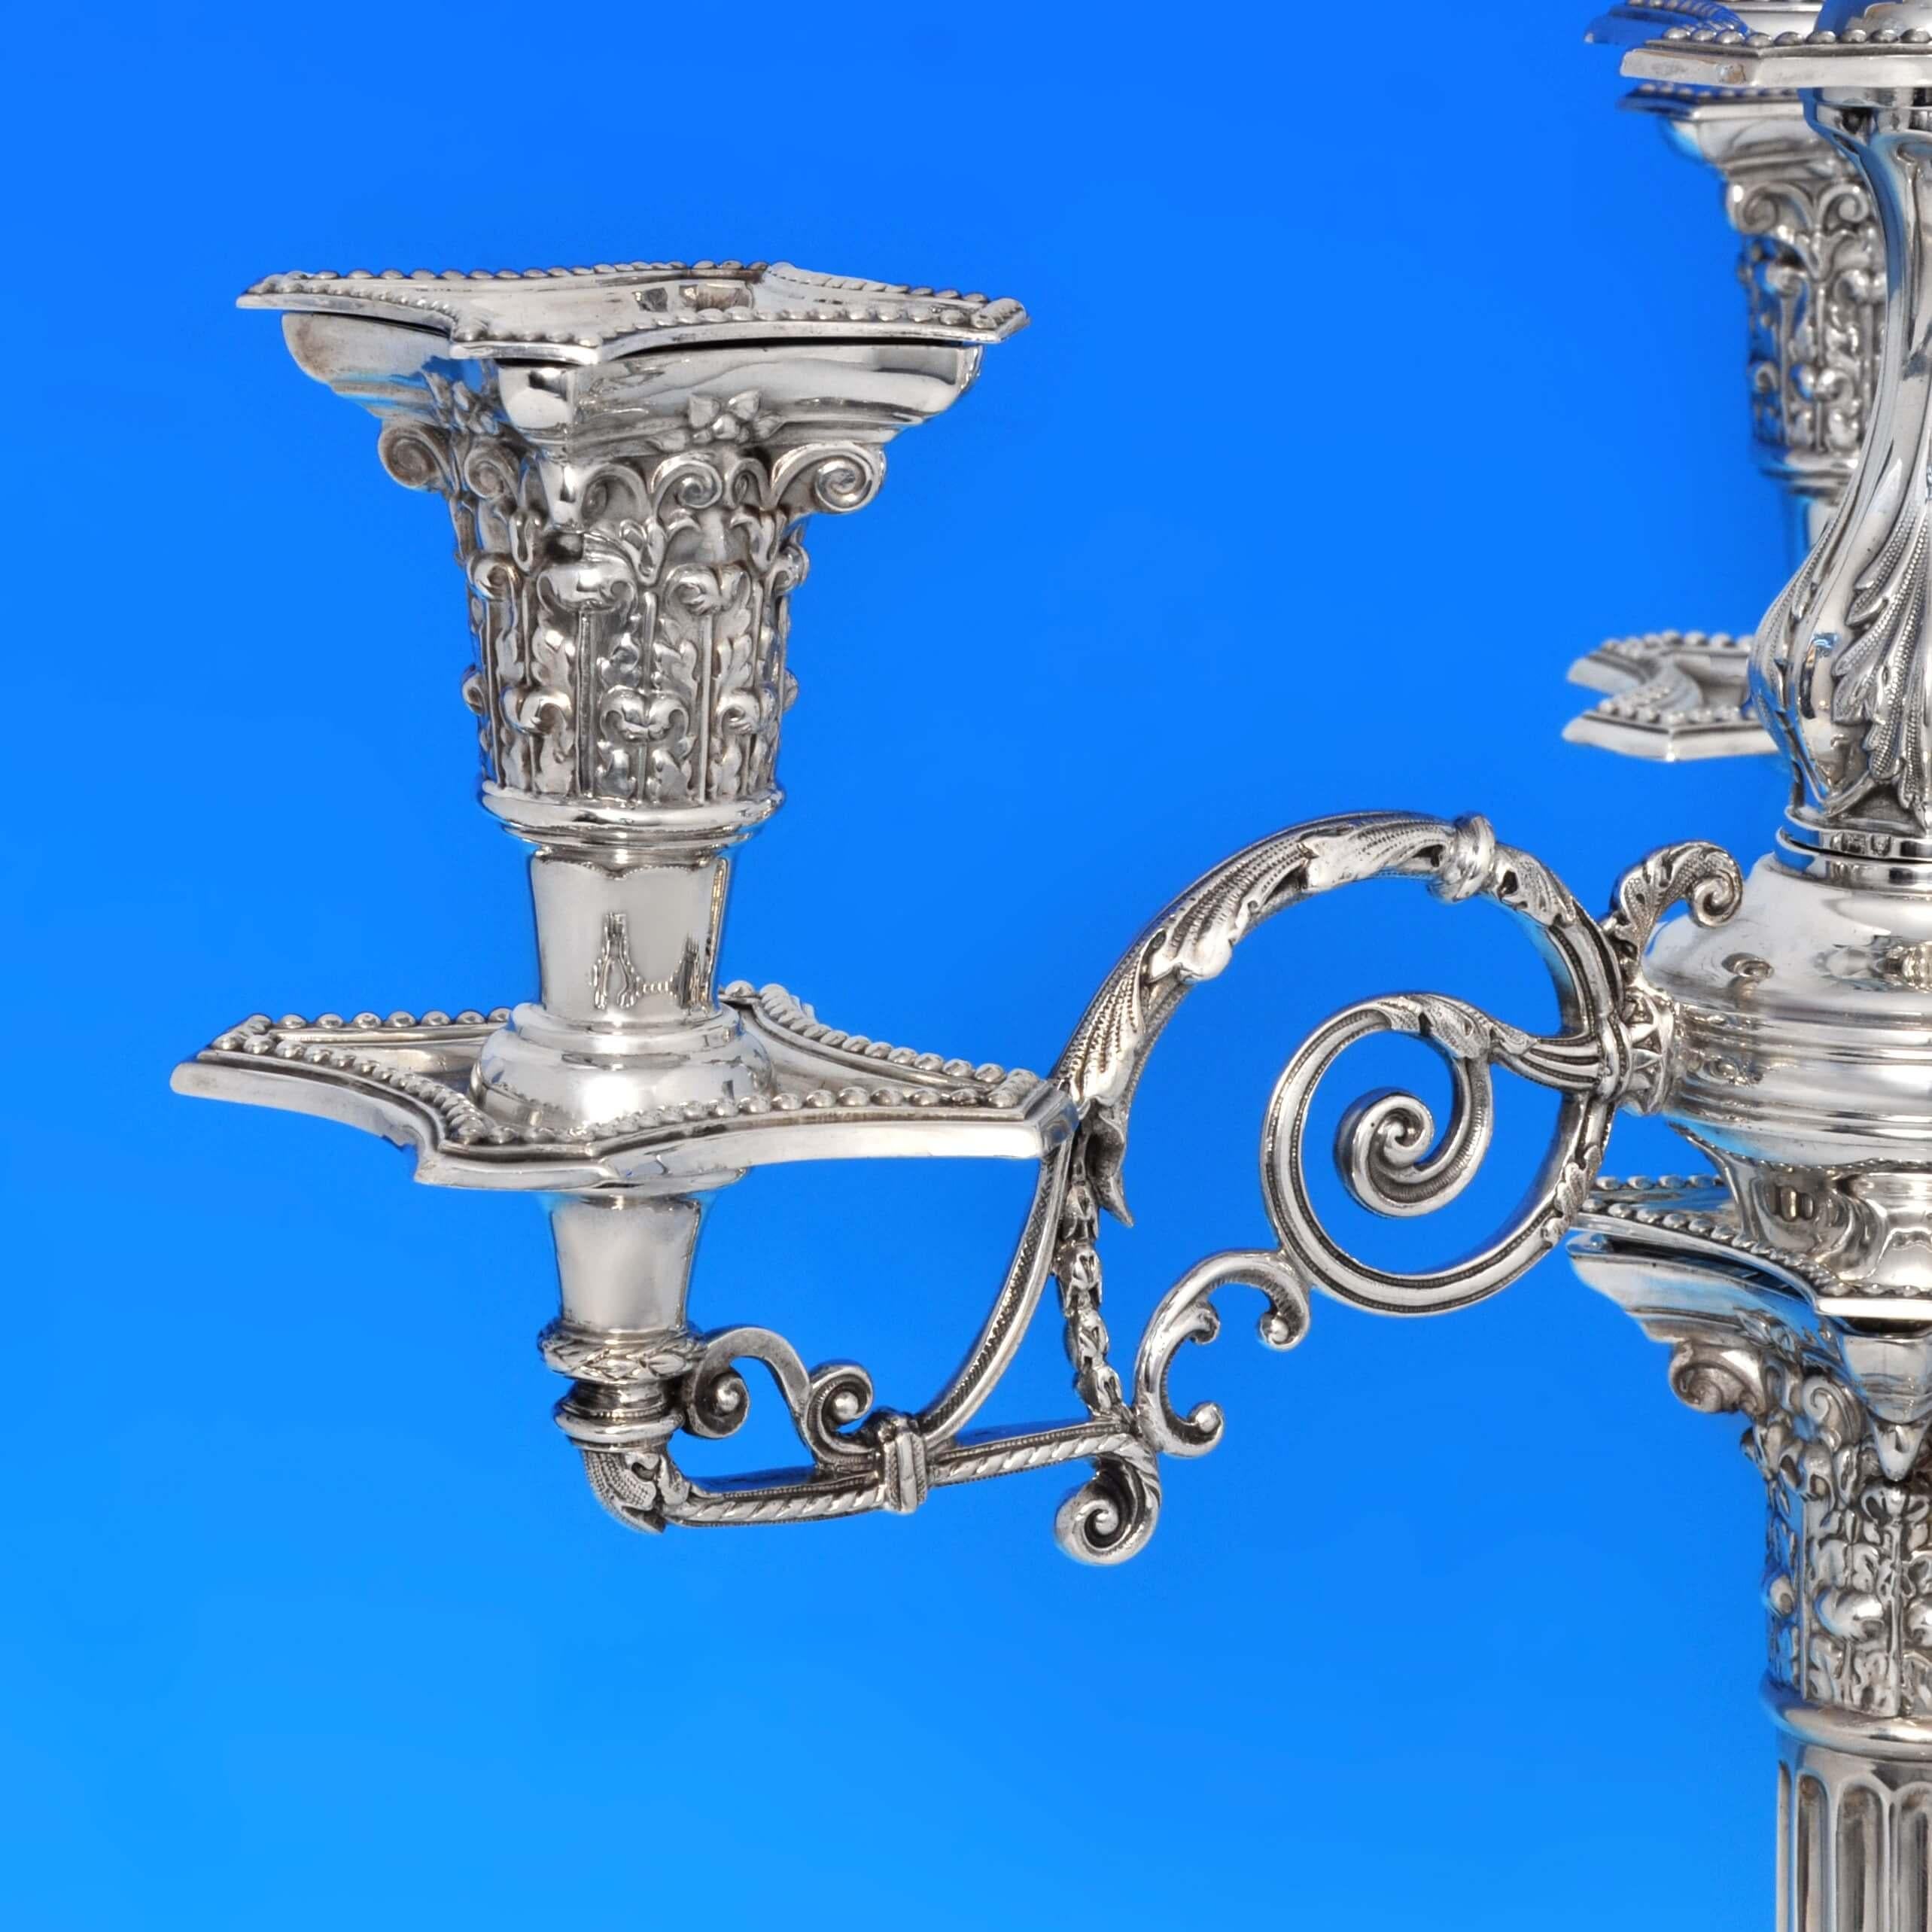 Poinçonnée à Londres en 1901 par C.C. Pilling, cette jolie paire de candélabres anciens en argent massif de la fin de l'époque victorienne est de style colonne corinthienne, avec des bordures en perles, des bases en gradins, des colonnes cannelées,